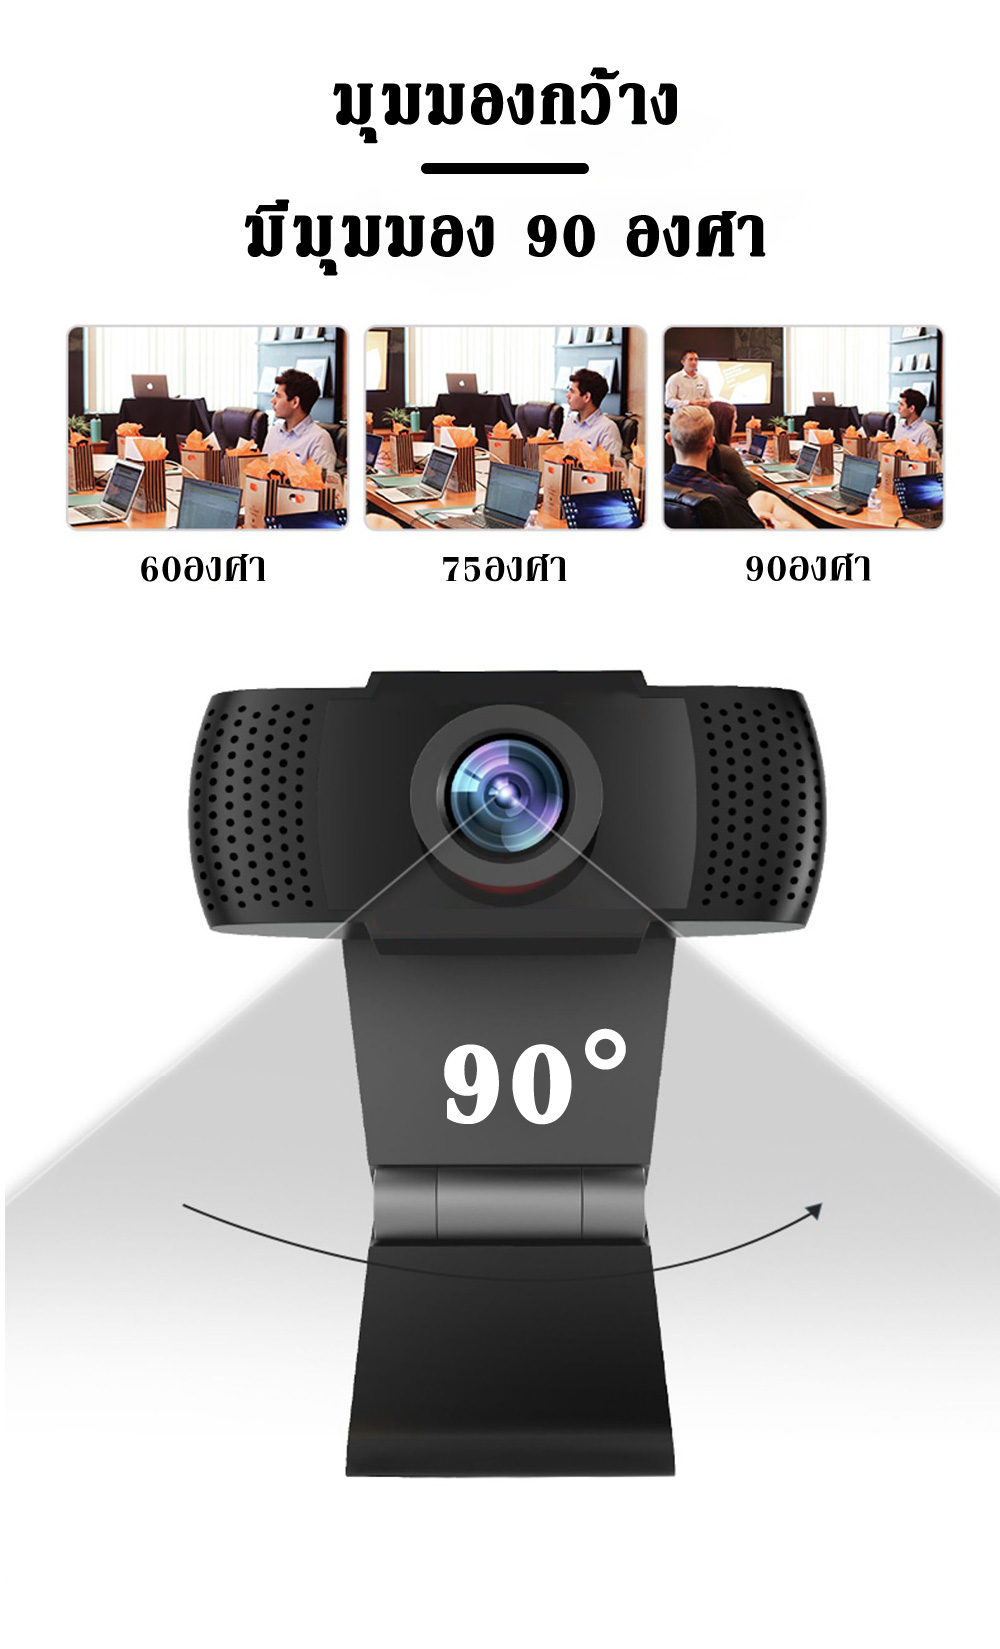 ภาพประกอบคำอธิบาย 2021 กล้องคอมพิวเตอpc กล้องเว็บแคม กล้องติดคอม webcam 1080P กล้องติดคอม pc กล้องwebcam บันทึกสด การประชุมทางวิดีโอ การเรียนรู้ออนไลน์